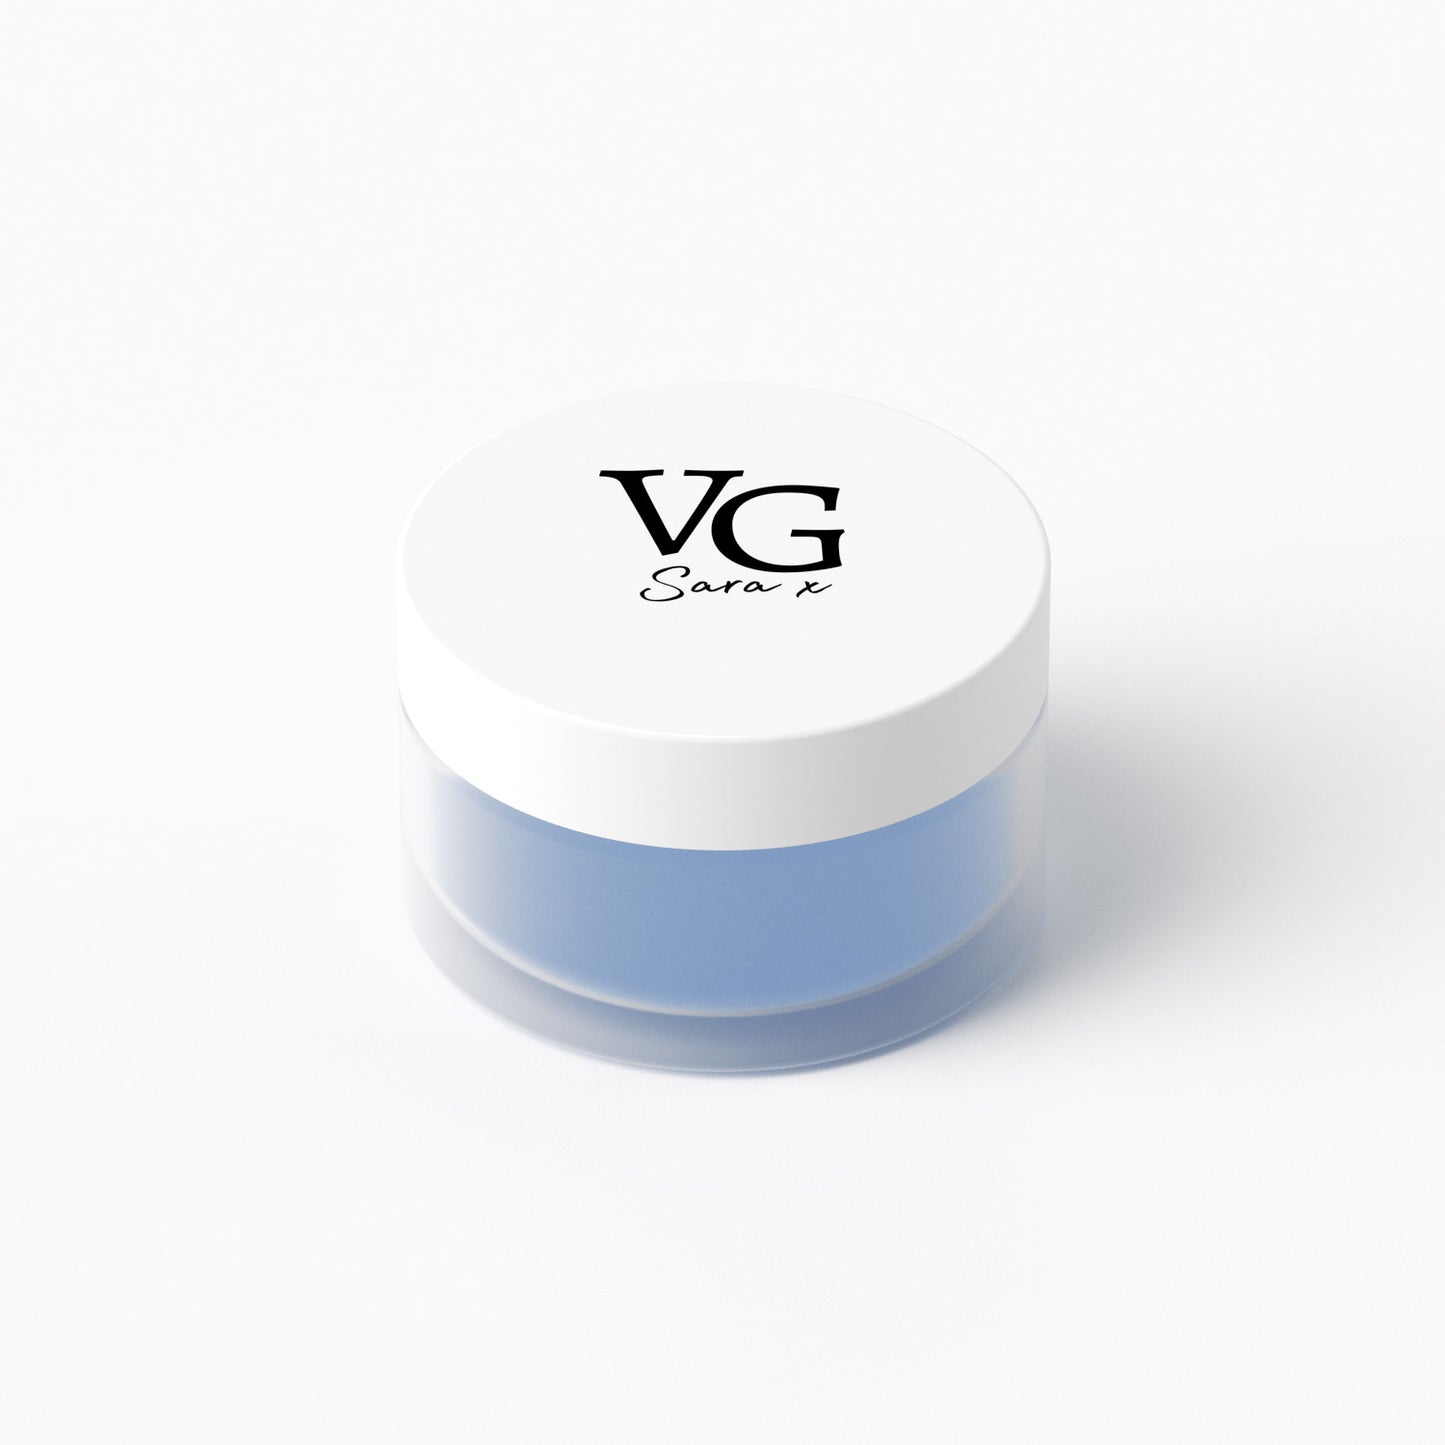 Blue-labeled cruelty-free Vitamin E lip conditioner jar